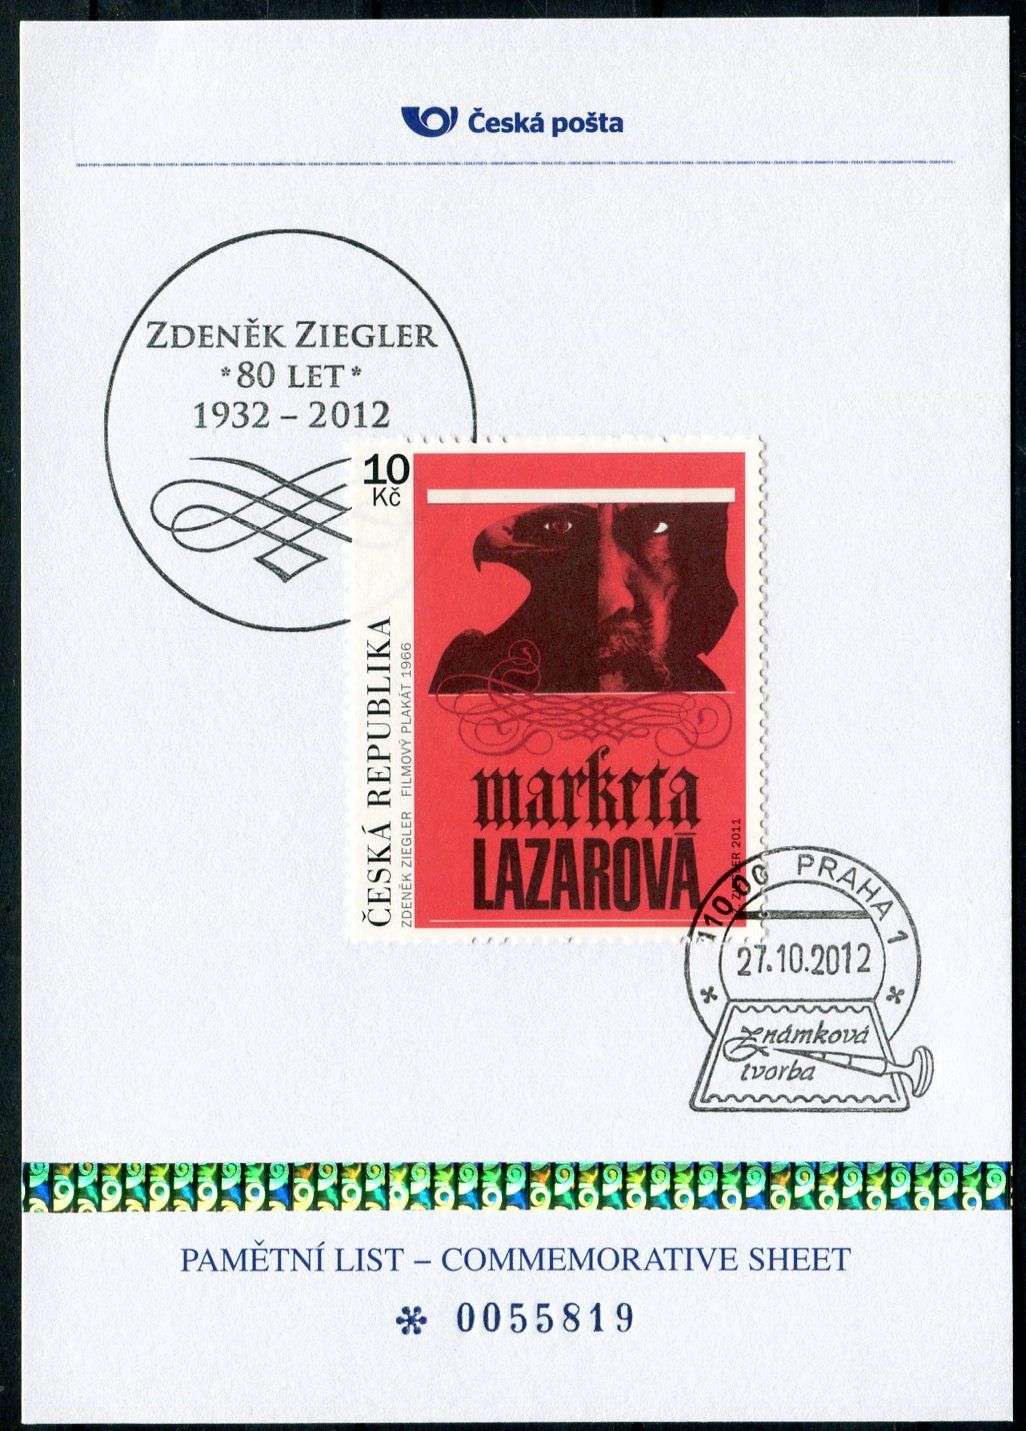 (2012) PLZ 25 - Pamětní list - Praha1: Zdeněk Ziegler